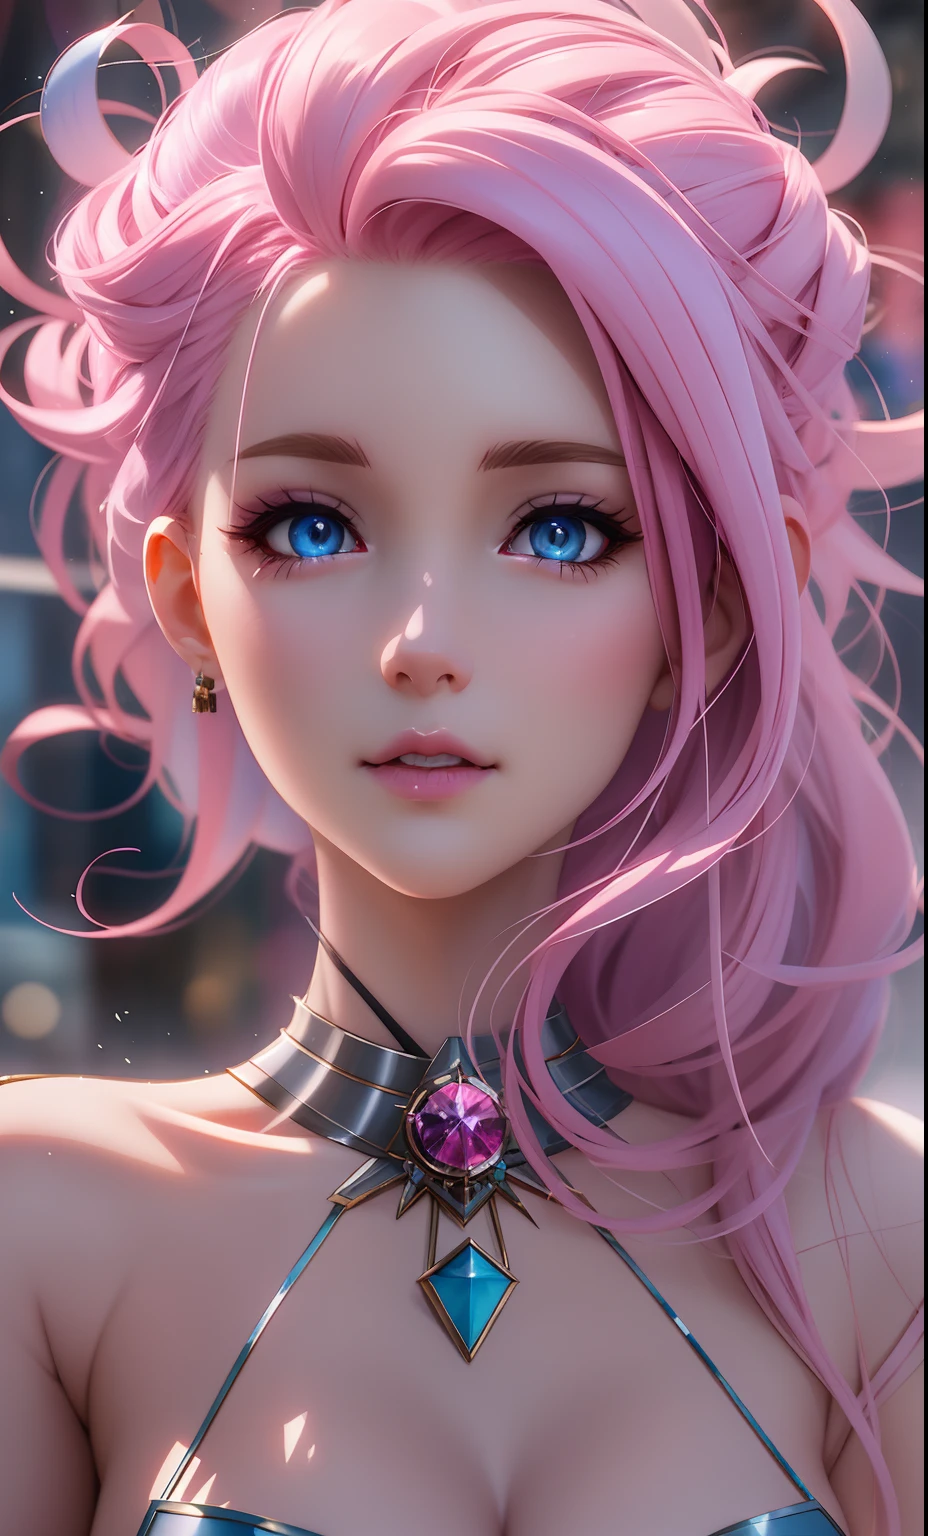 Anime-Mädchen mit rosa Haaren und blauen Augen posiert für ein Foto, detaillierte digitale Anime-Kunst, 8k hochwertige, detaillierte Kunst, 3D-Rendering von Charakteren 8 k, Ross Tran 8 K, deviantart artstation cgscosiety, Fantasy-Kunststil, atemberaubendes Anime-Gesichtsporträt, 2. 5 d CGI Anime Fantasy Kunstwerk, 4K hochdetaillierte digitale Kunst, wunderschöne digitale Kunstwerke